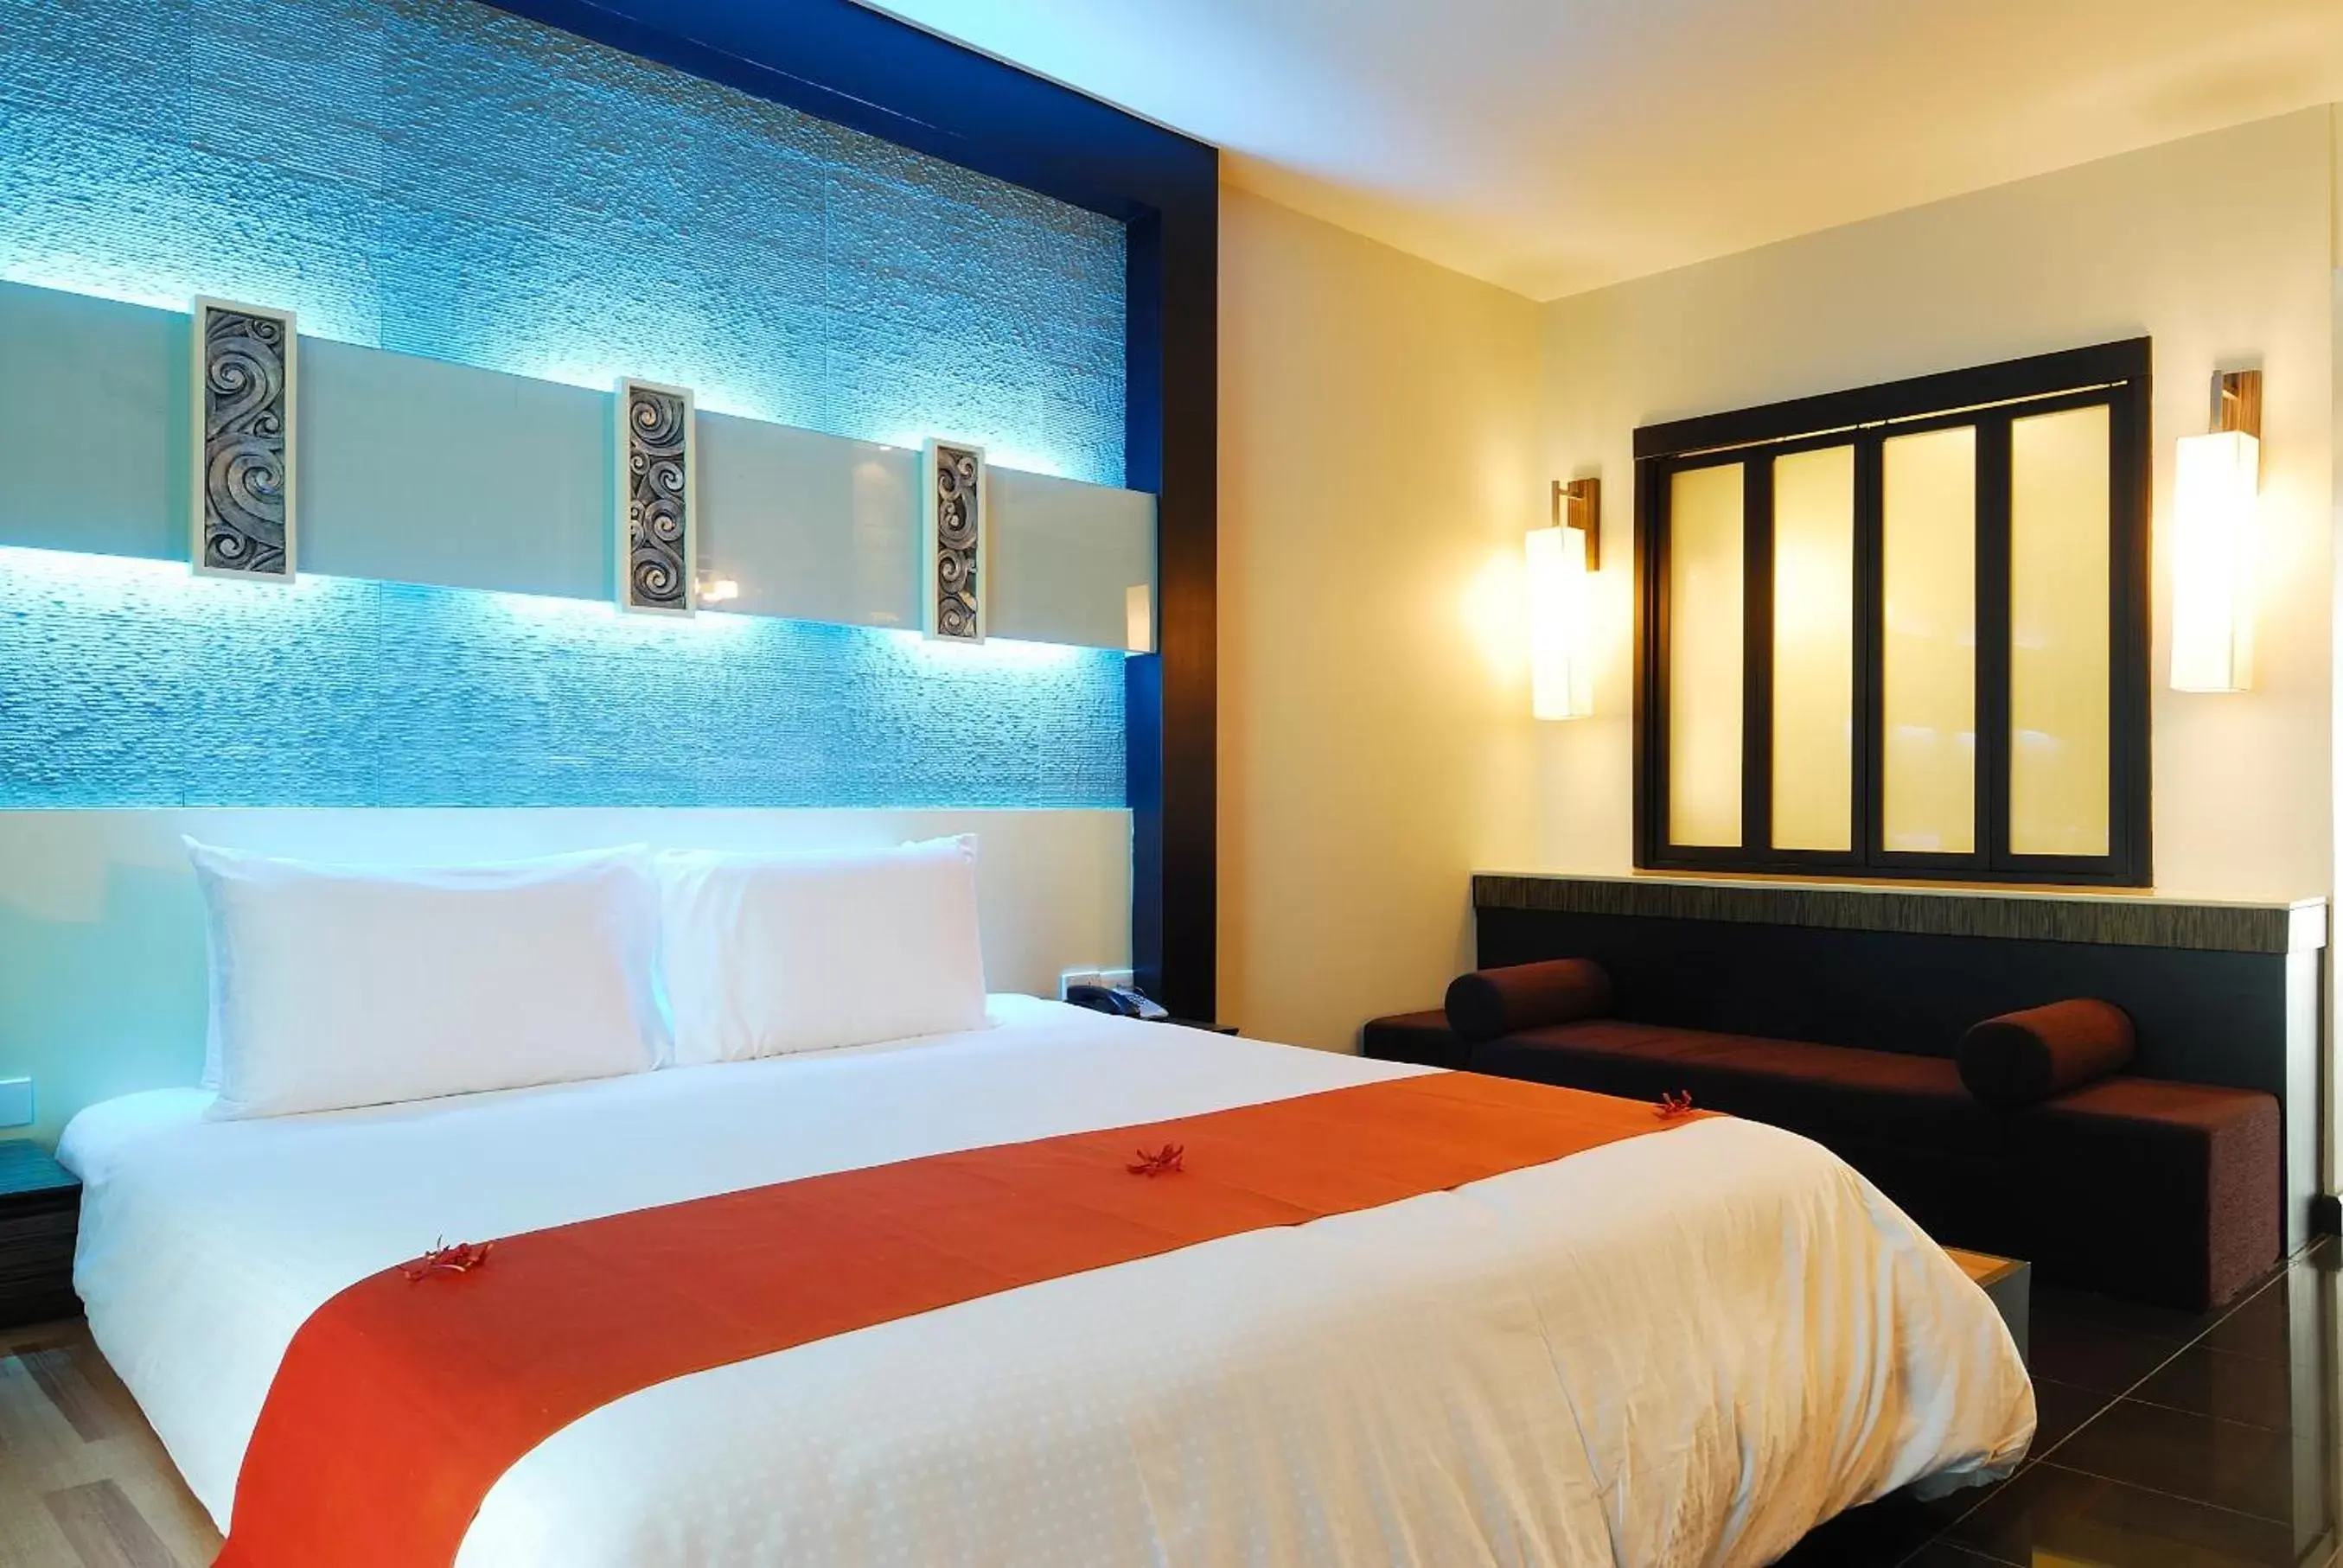 Bedroom, Bed in The Zign Hotel